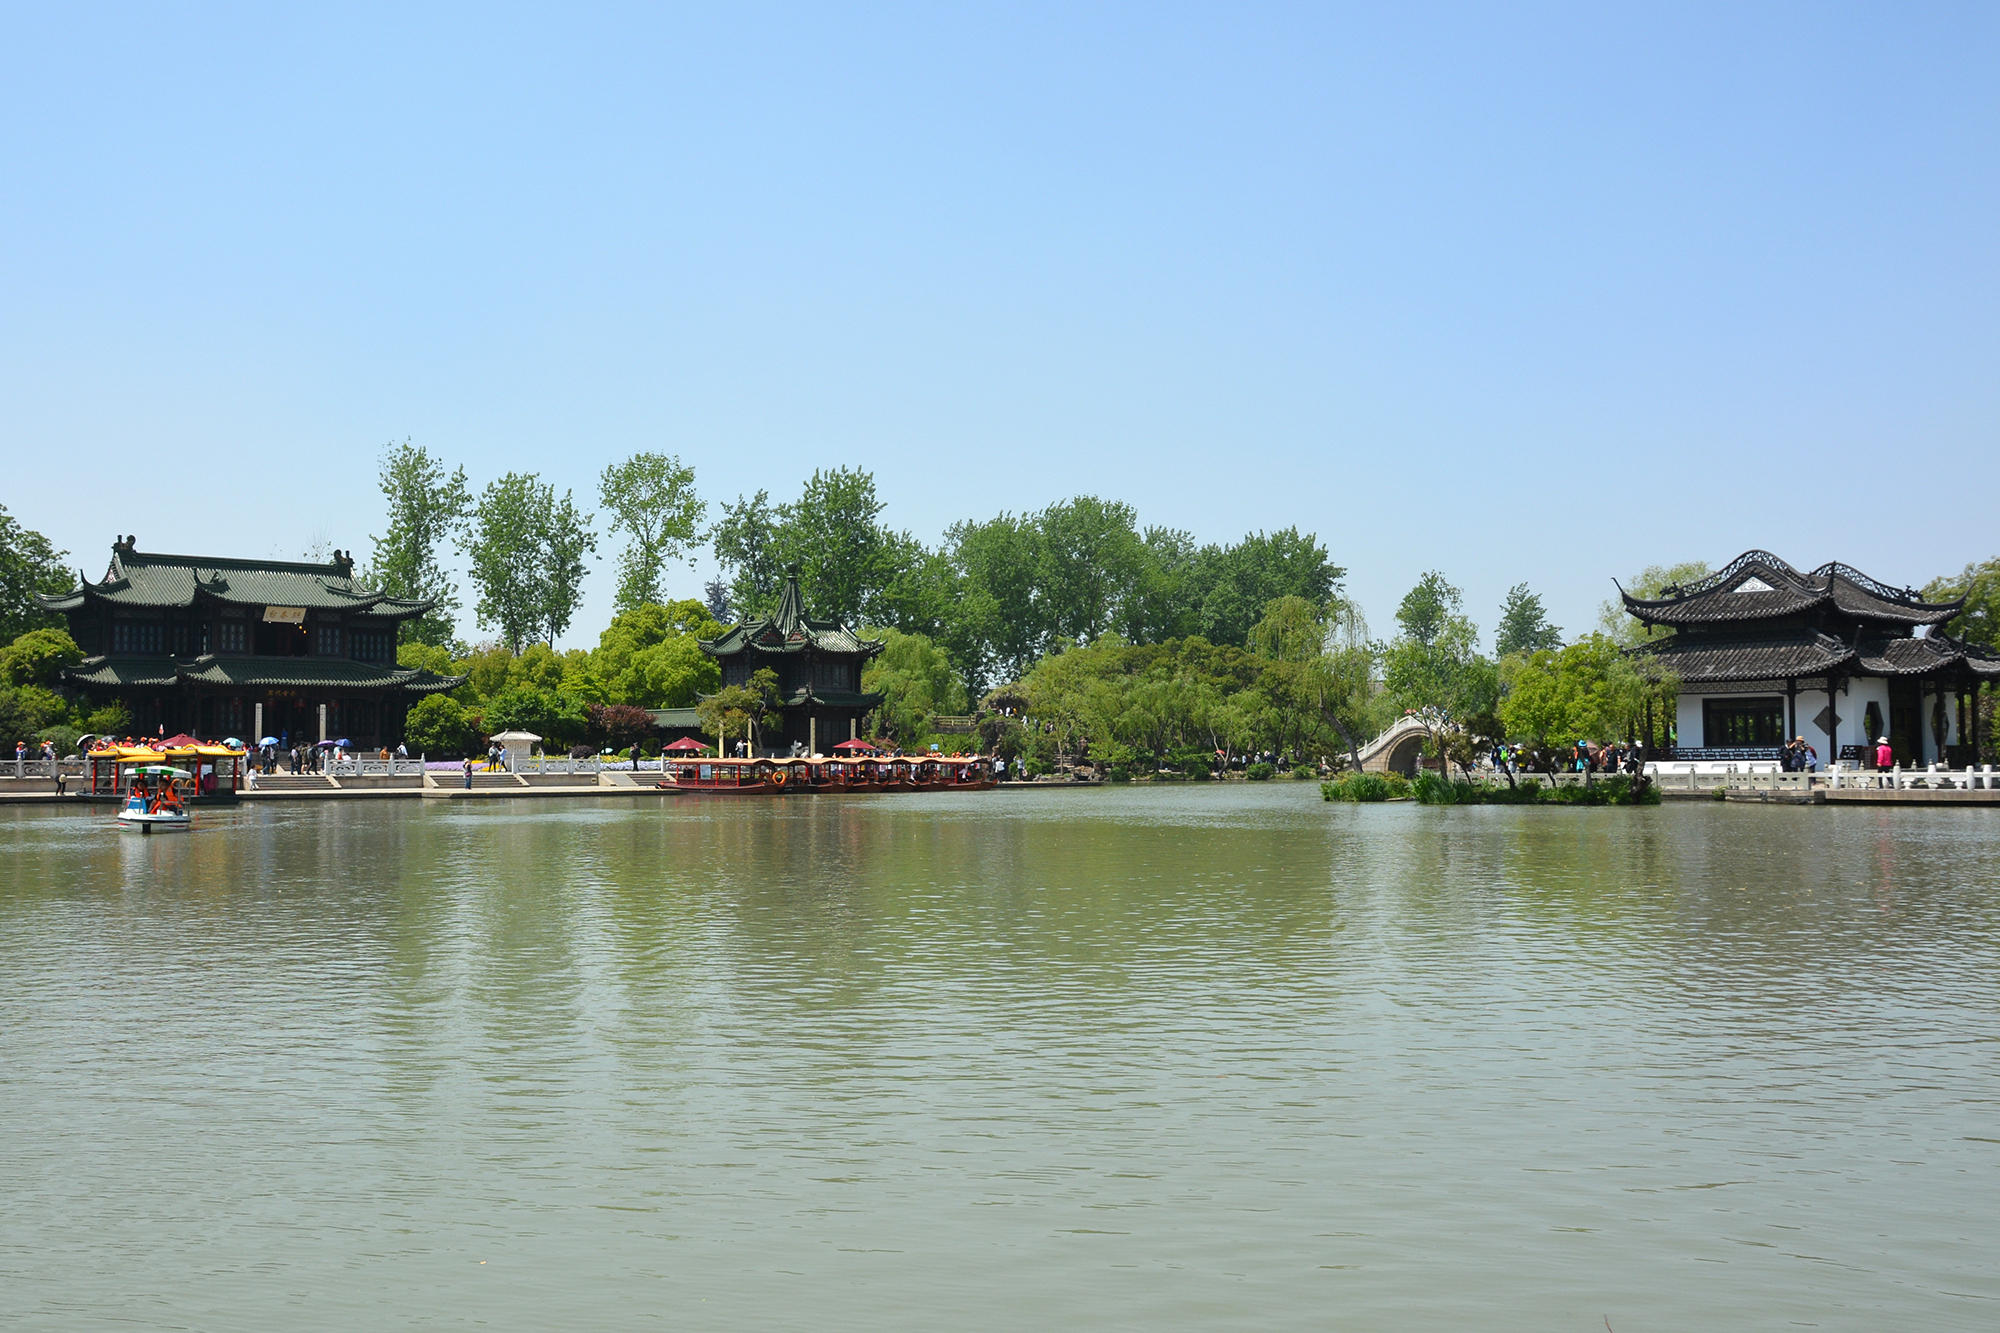 扬州旅游必打卡的3个景点,其中一个是世界文化遗产,建议收藏